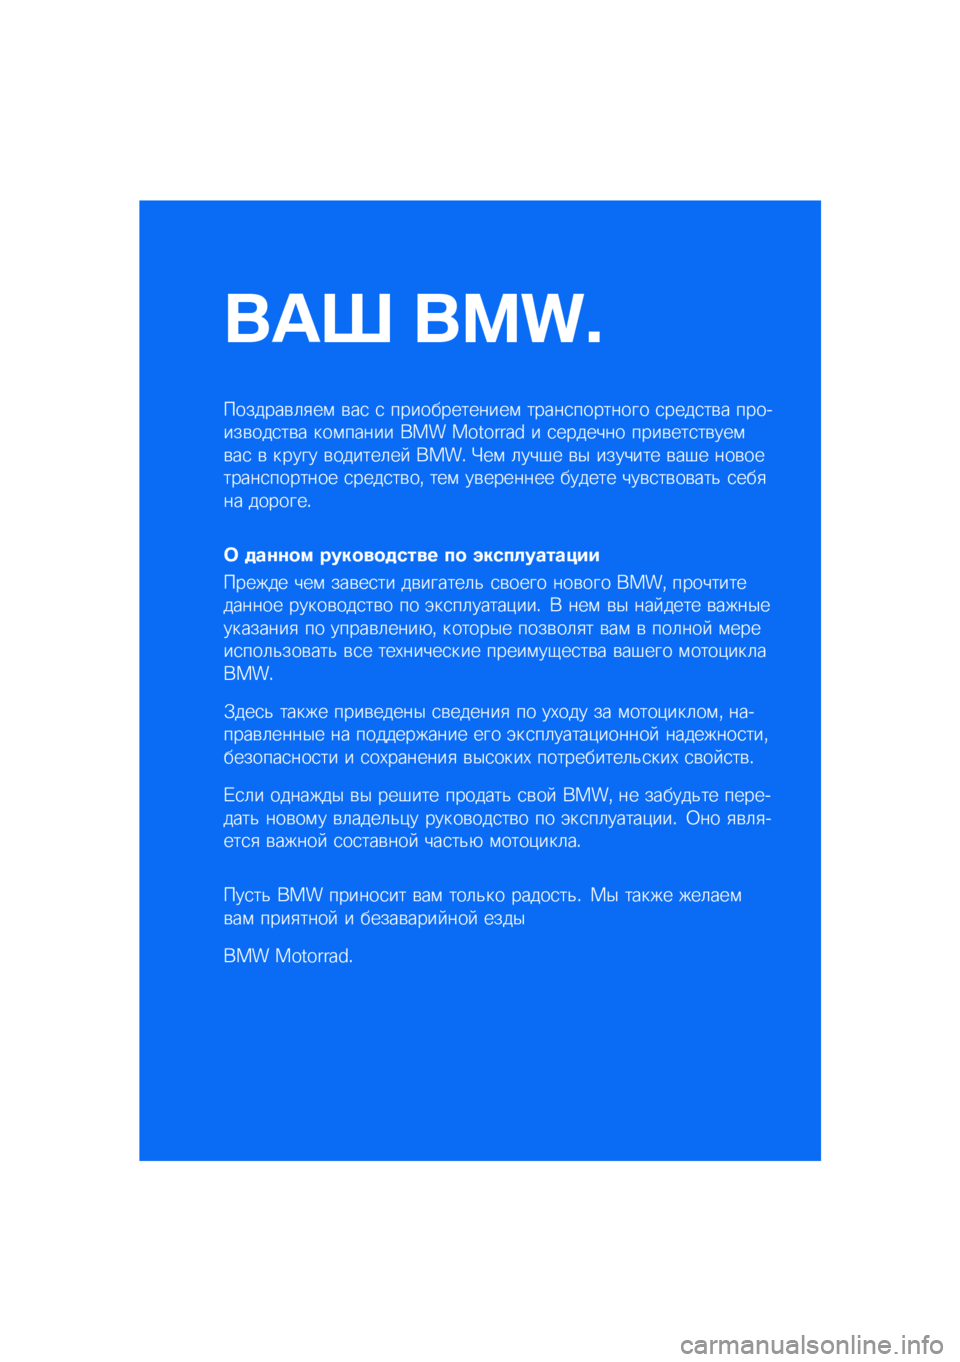 BMW MOTORRAD M 1000 RR 2021  Руководство по эксплуатации (in Russian) ��� ����\b
�������\b�	�
��\f �\b��
 �
 �������������\f �����
�������� �
����
��\b� �������\b���
��\b� ���\f����� ��� �������� � 